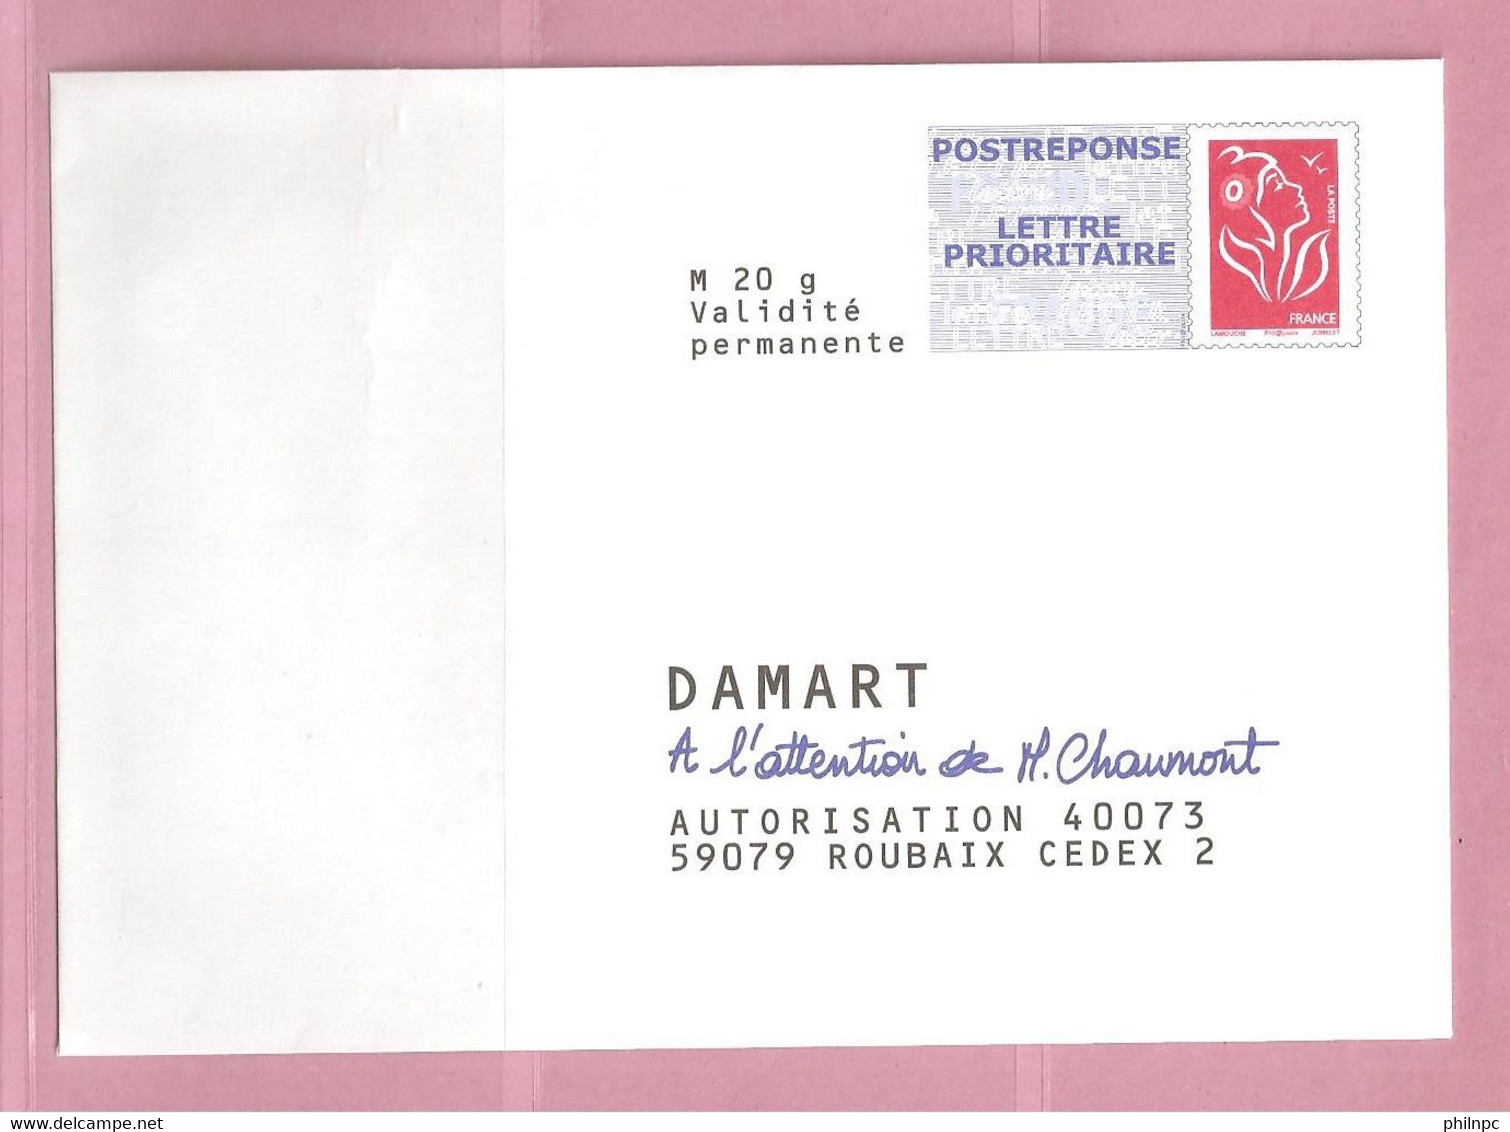 France, Prêt à Poster Réponse, 3734A, Postréponse, Damart, Marianne De Lamouche - Prêts-à-poster:Answer/Lamouche